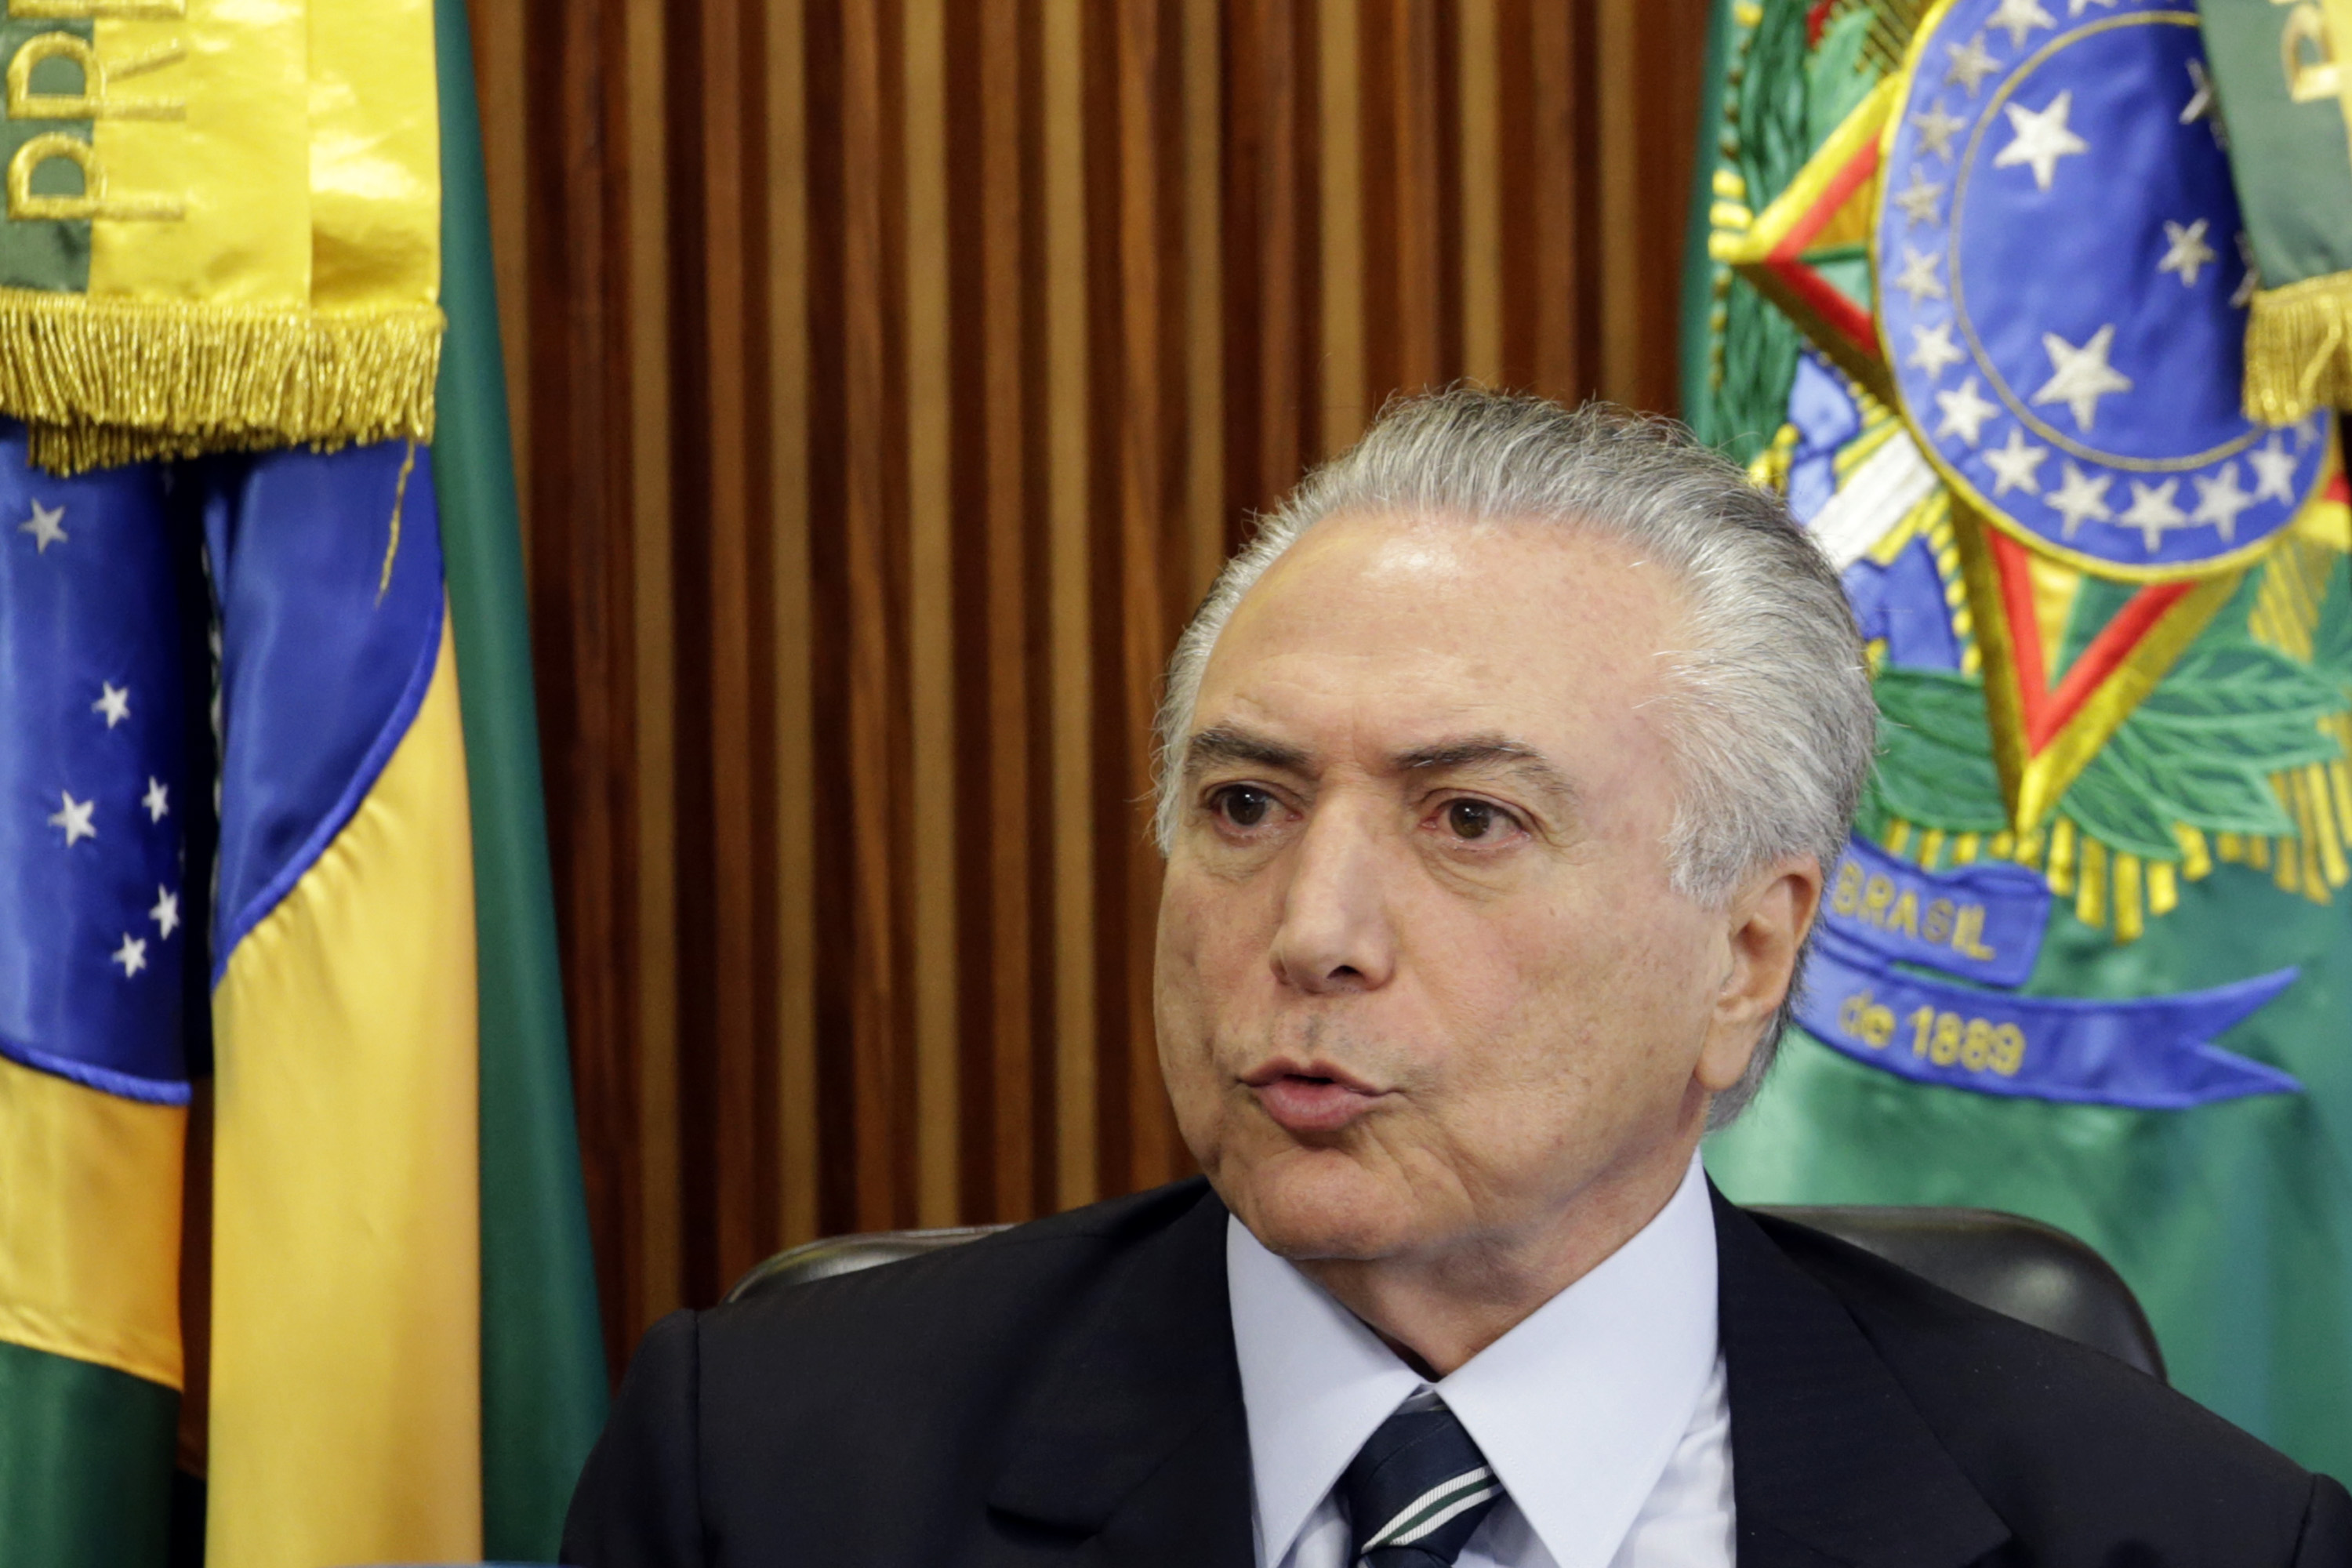 Temer tiene una investigación abierta por estar involucrado en casos de corrupción relacionados a Petrobras.